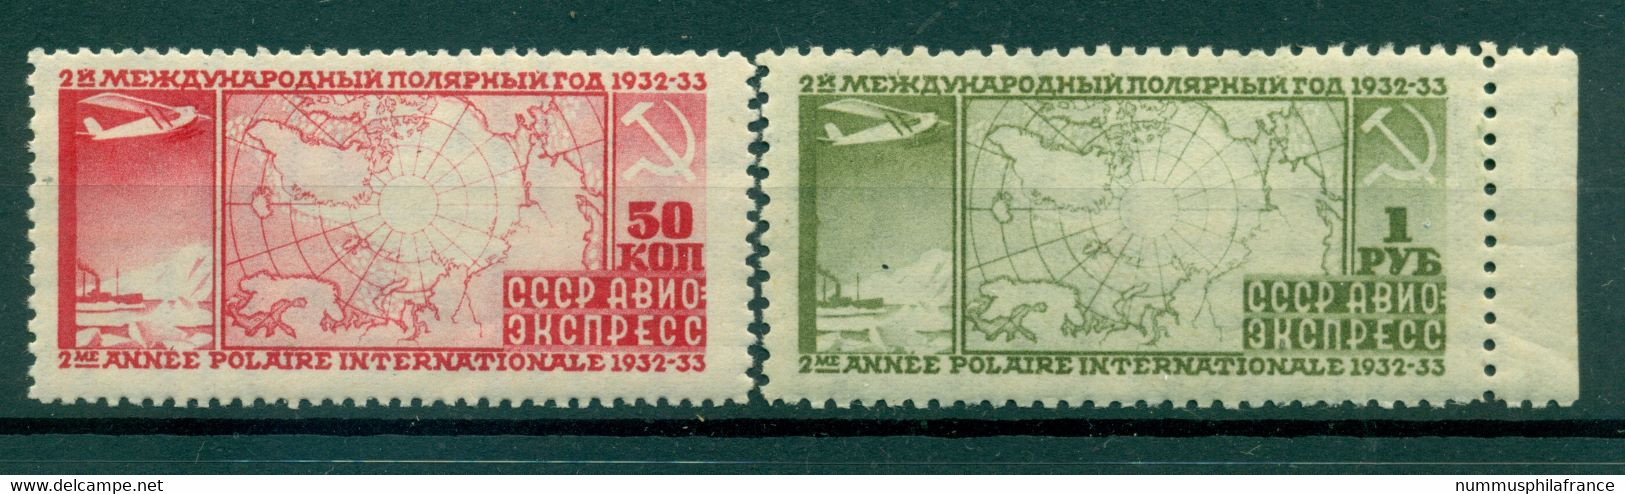 URSS 1932 - Y & T N. 31/32 Poste Aérienne - 2e Année Polaire Internationale (Michel N. 410 A/11 B) - Ungebraucht